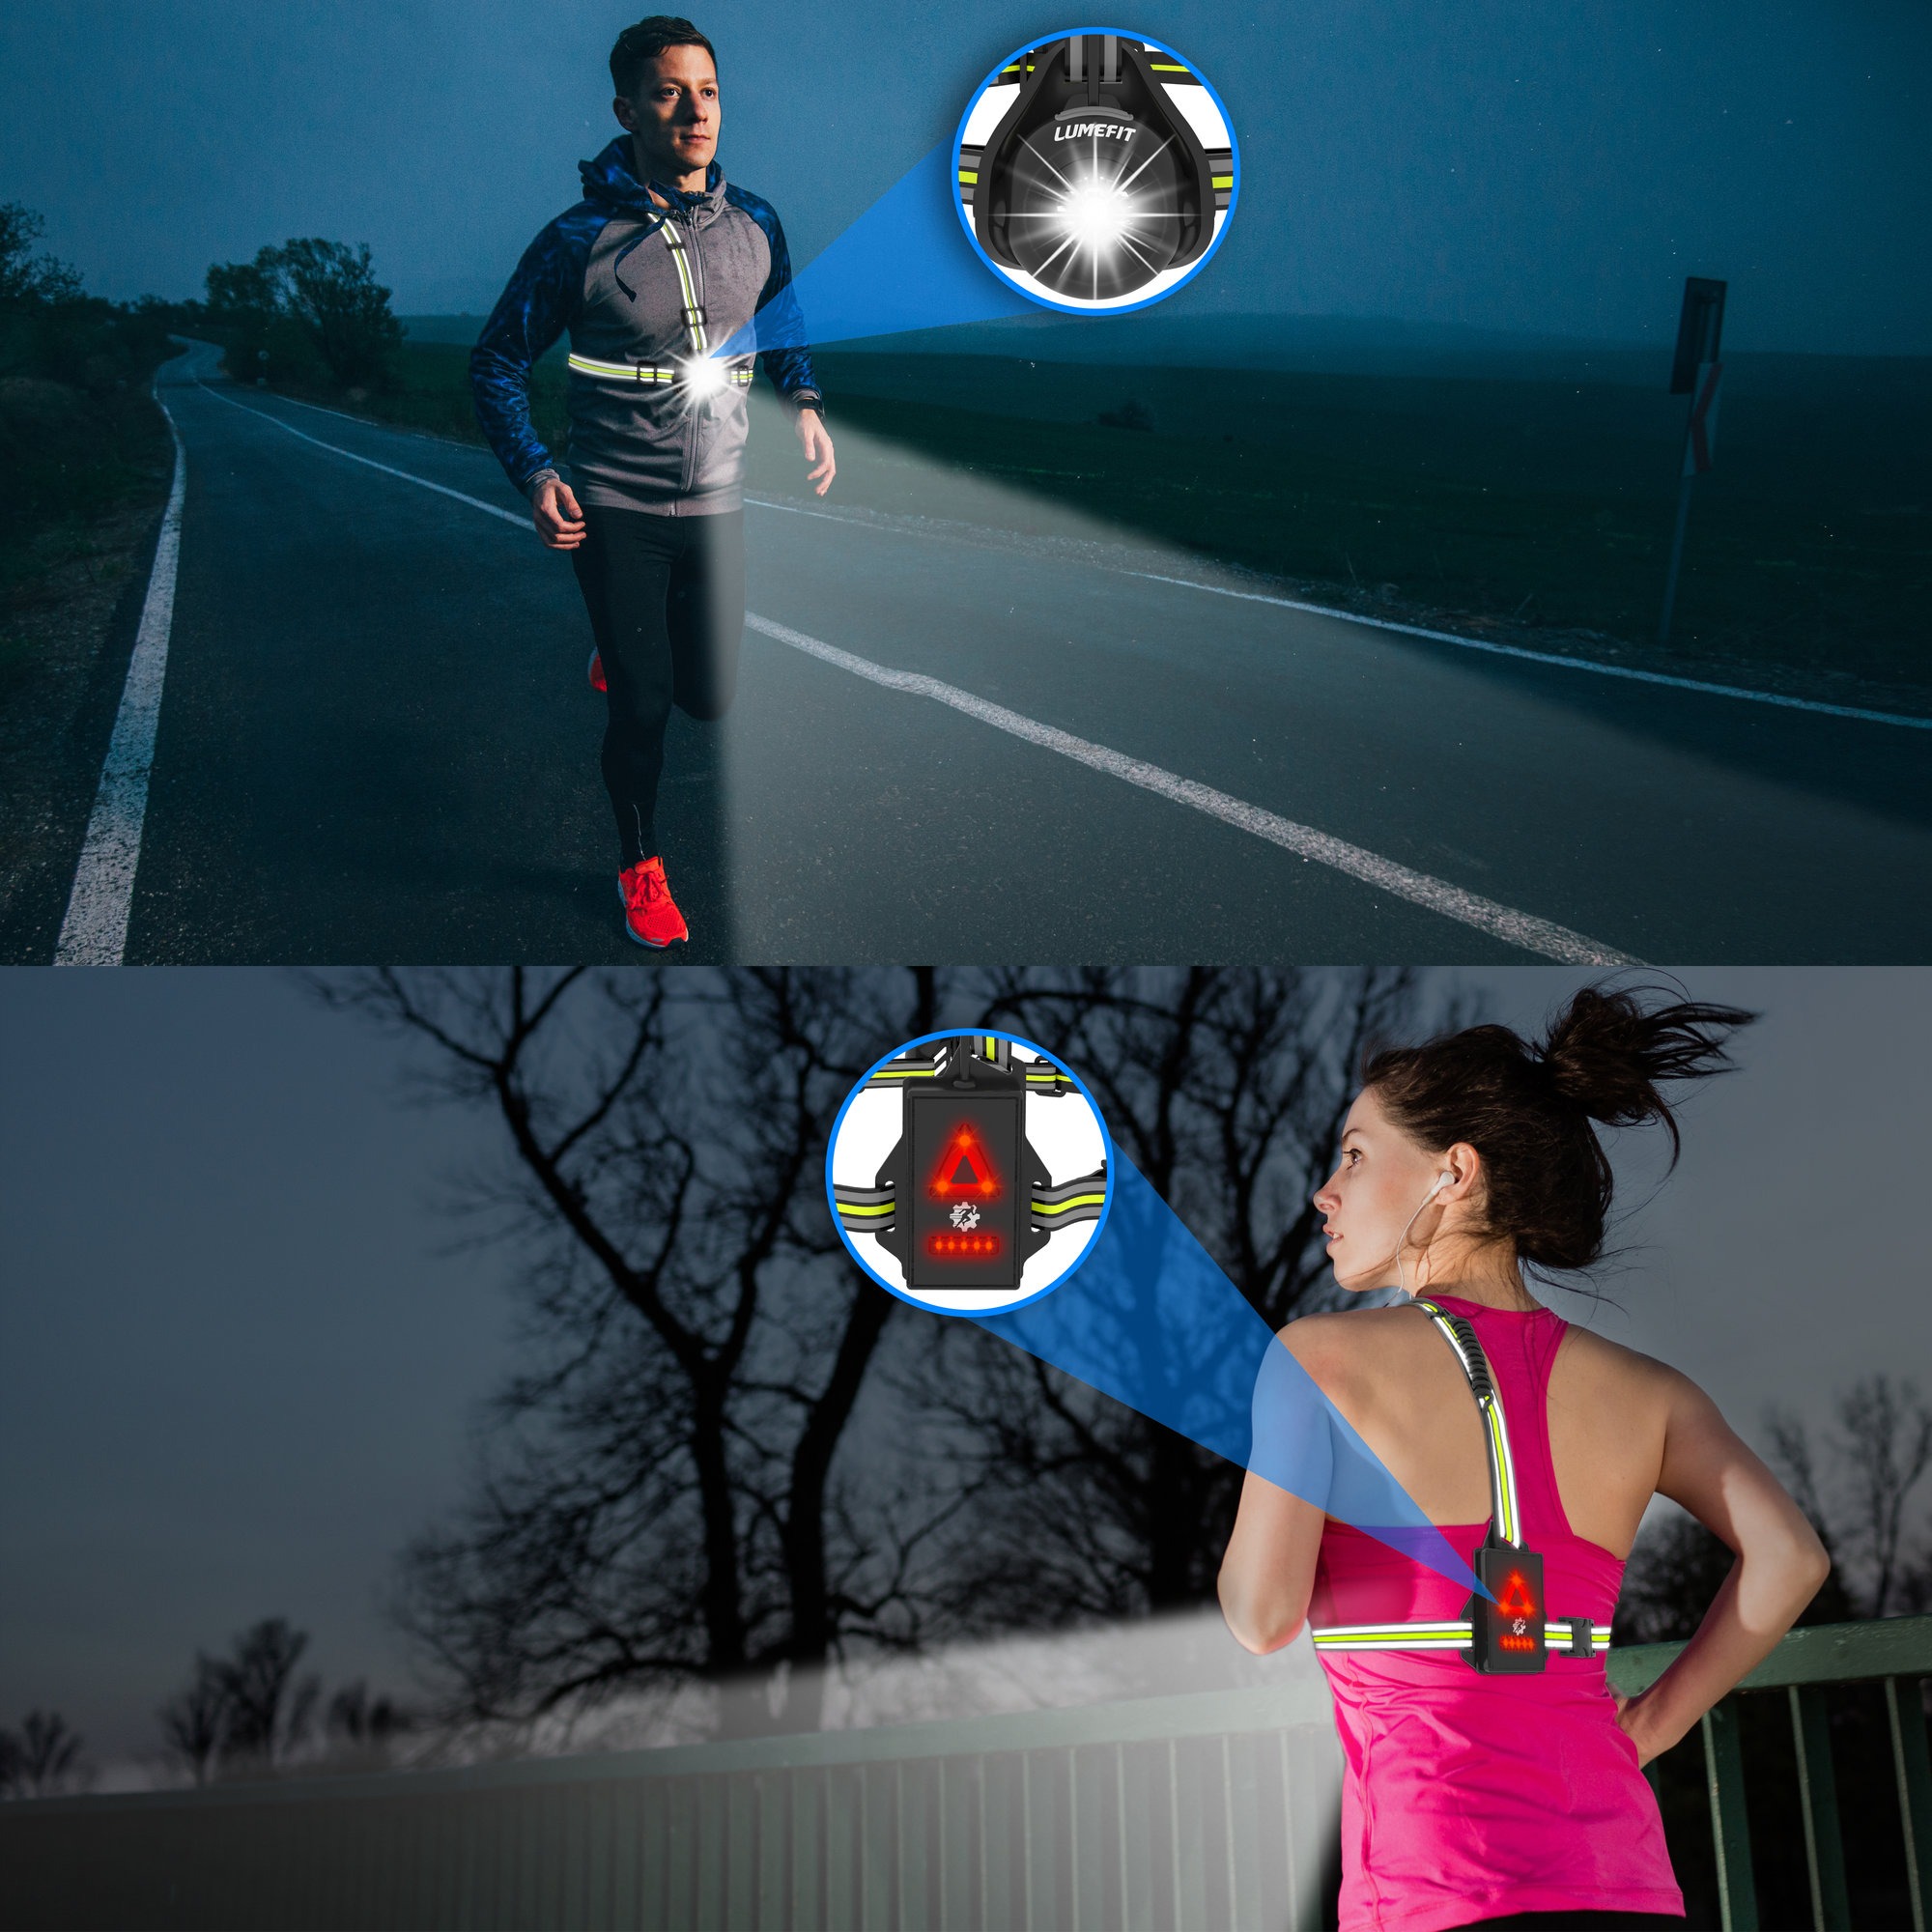 Brust Lauflicht für Läufer und Jogger Einstellbarer Balken und Reflektor  Laufweste Gear_costbuy